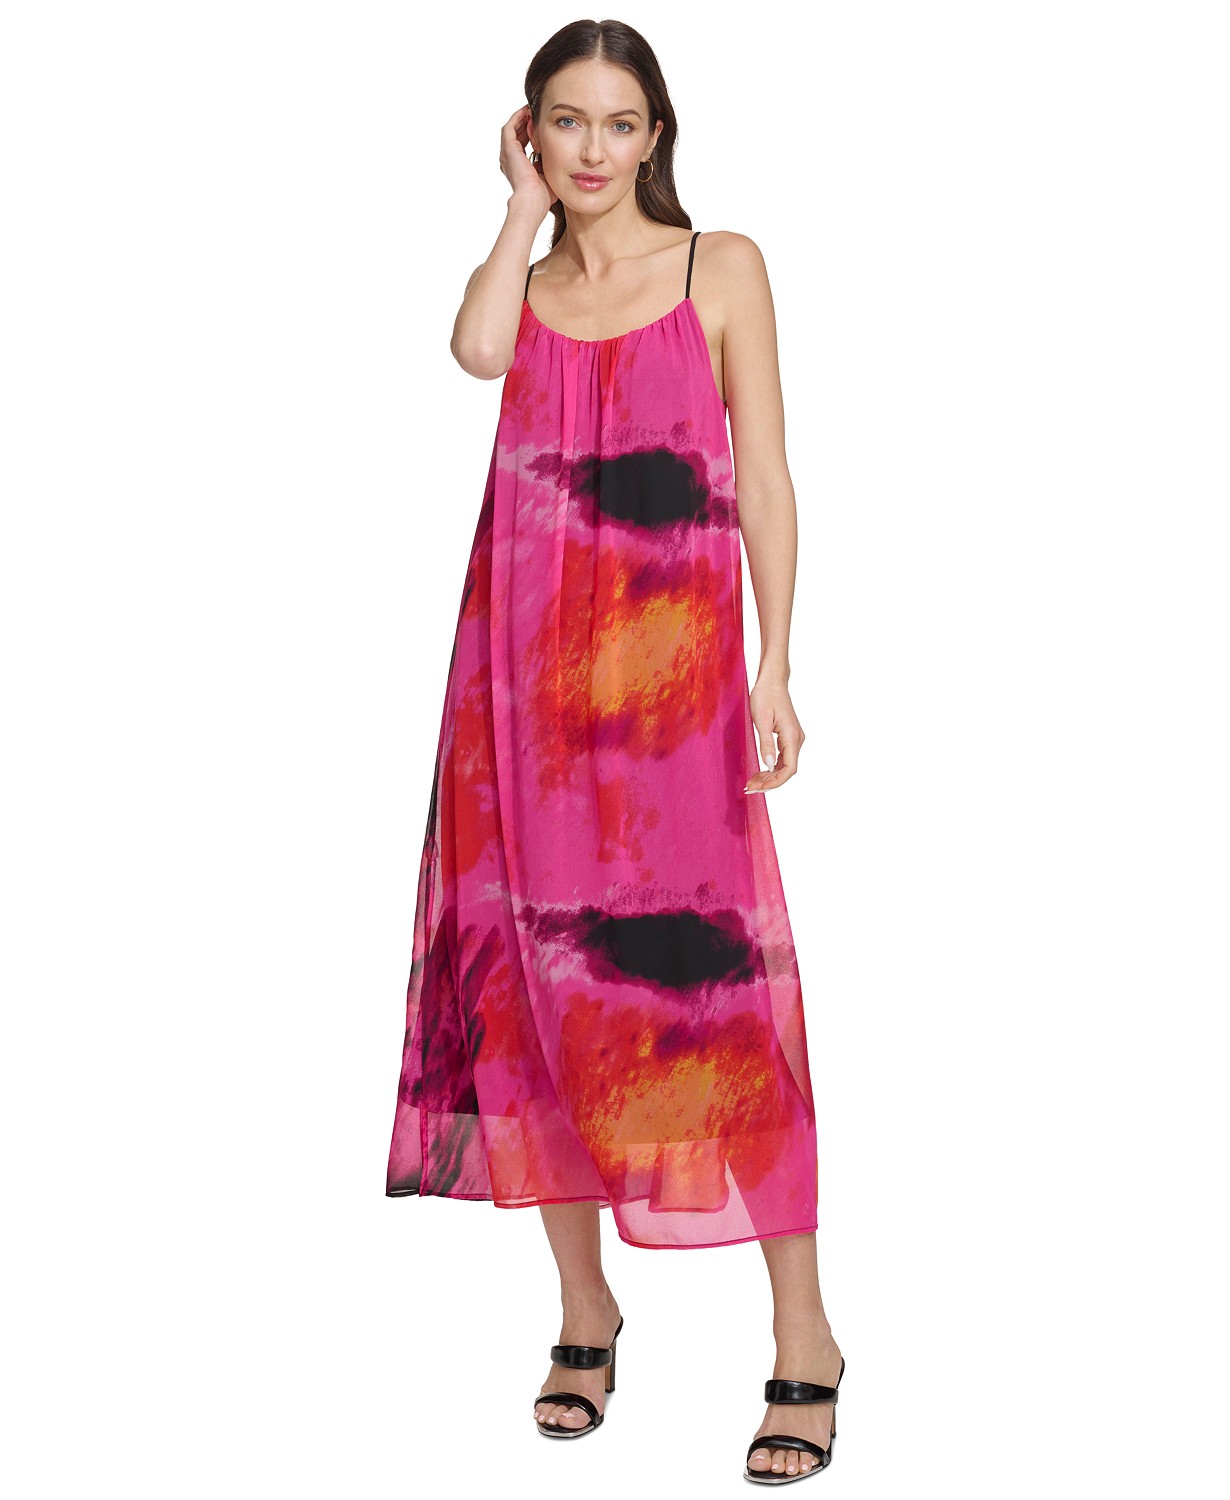 Womens Printed Sleeveless Chiffon Dress